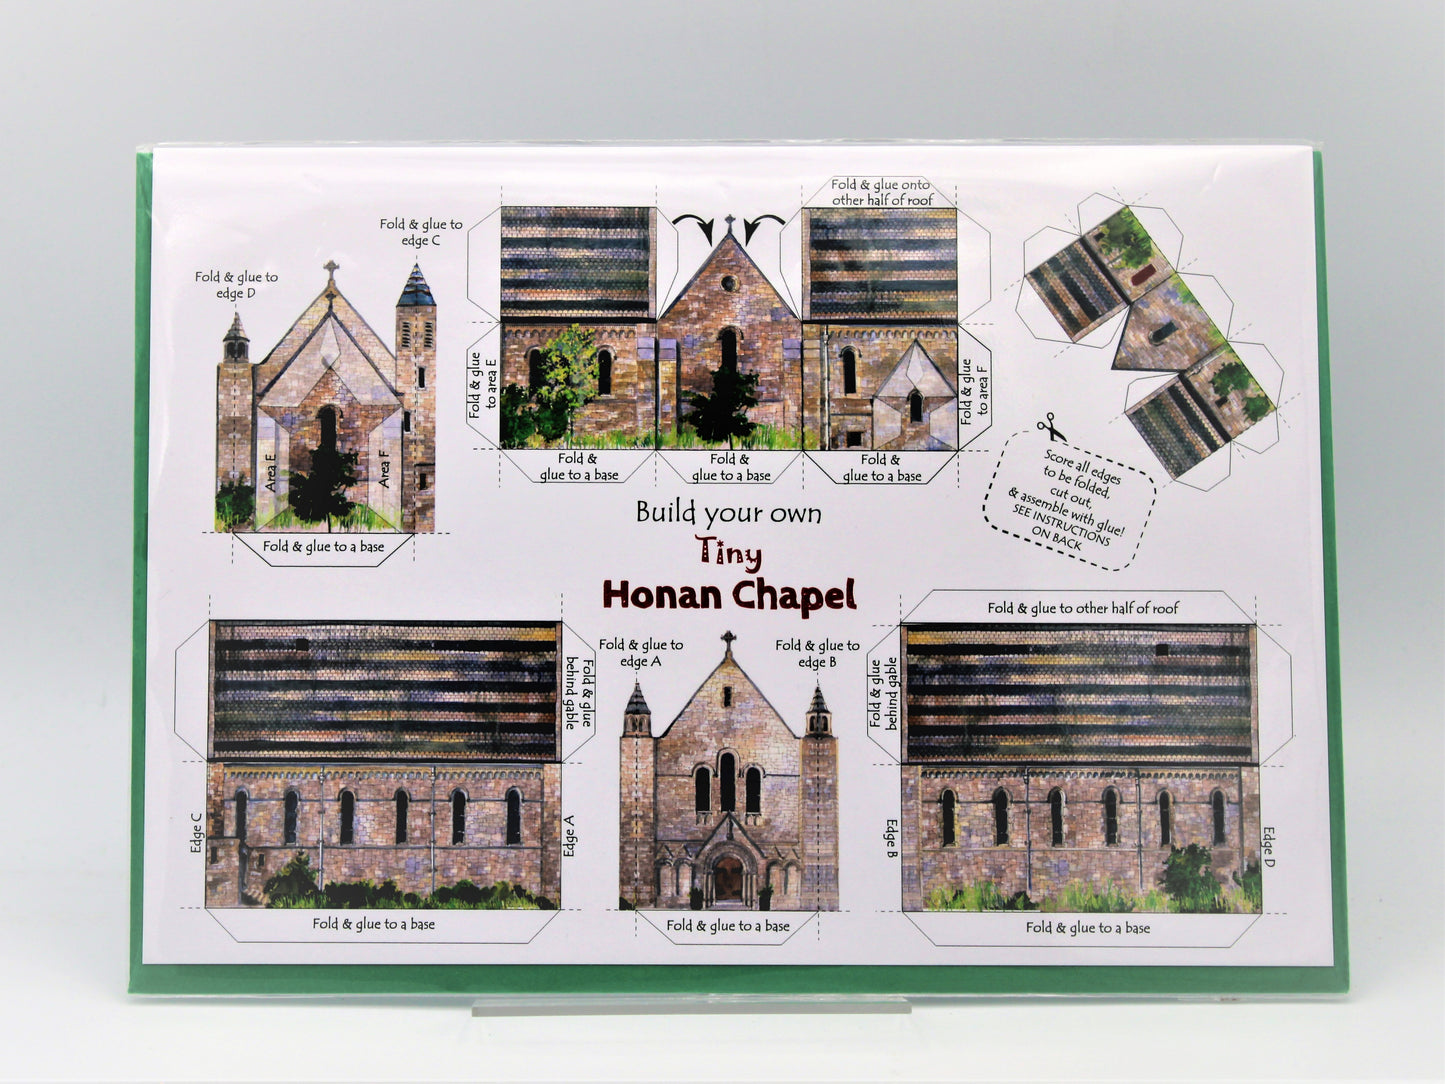 Tiny Ireland: Build Your Own Tiny Honan Chapel